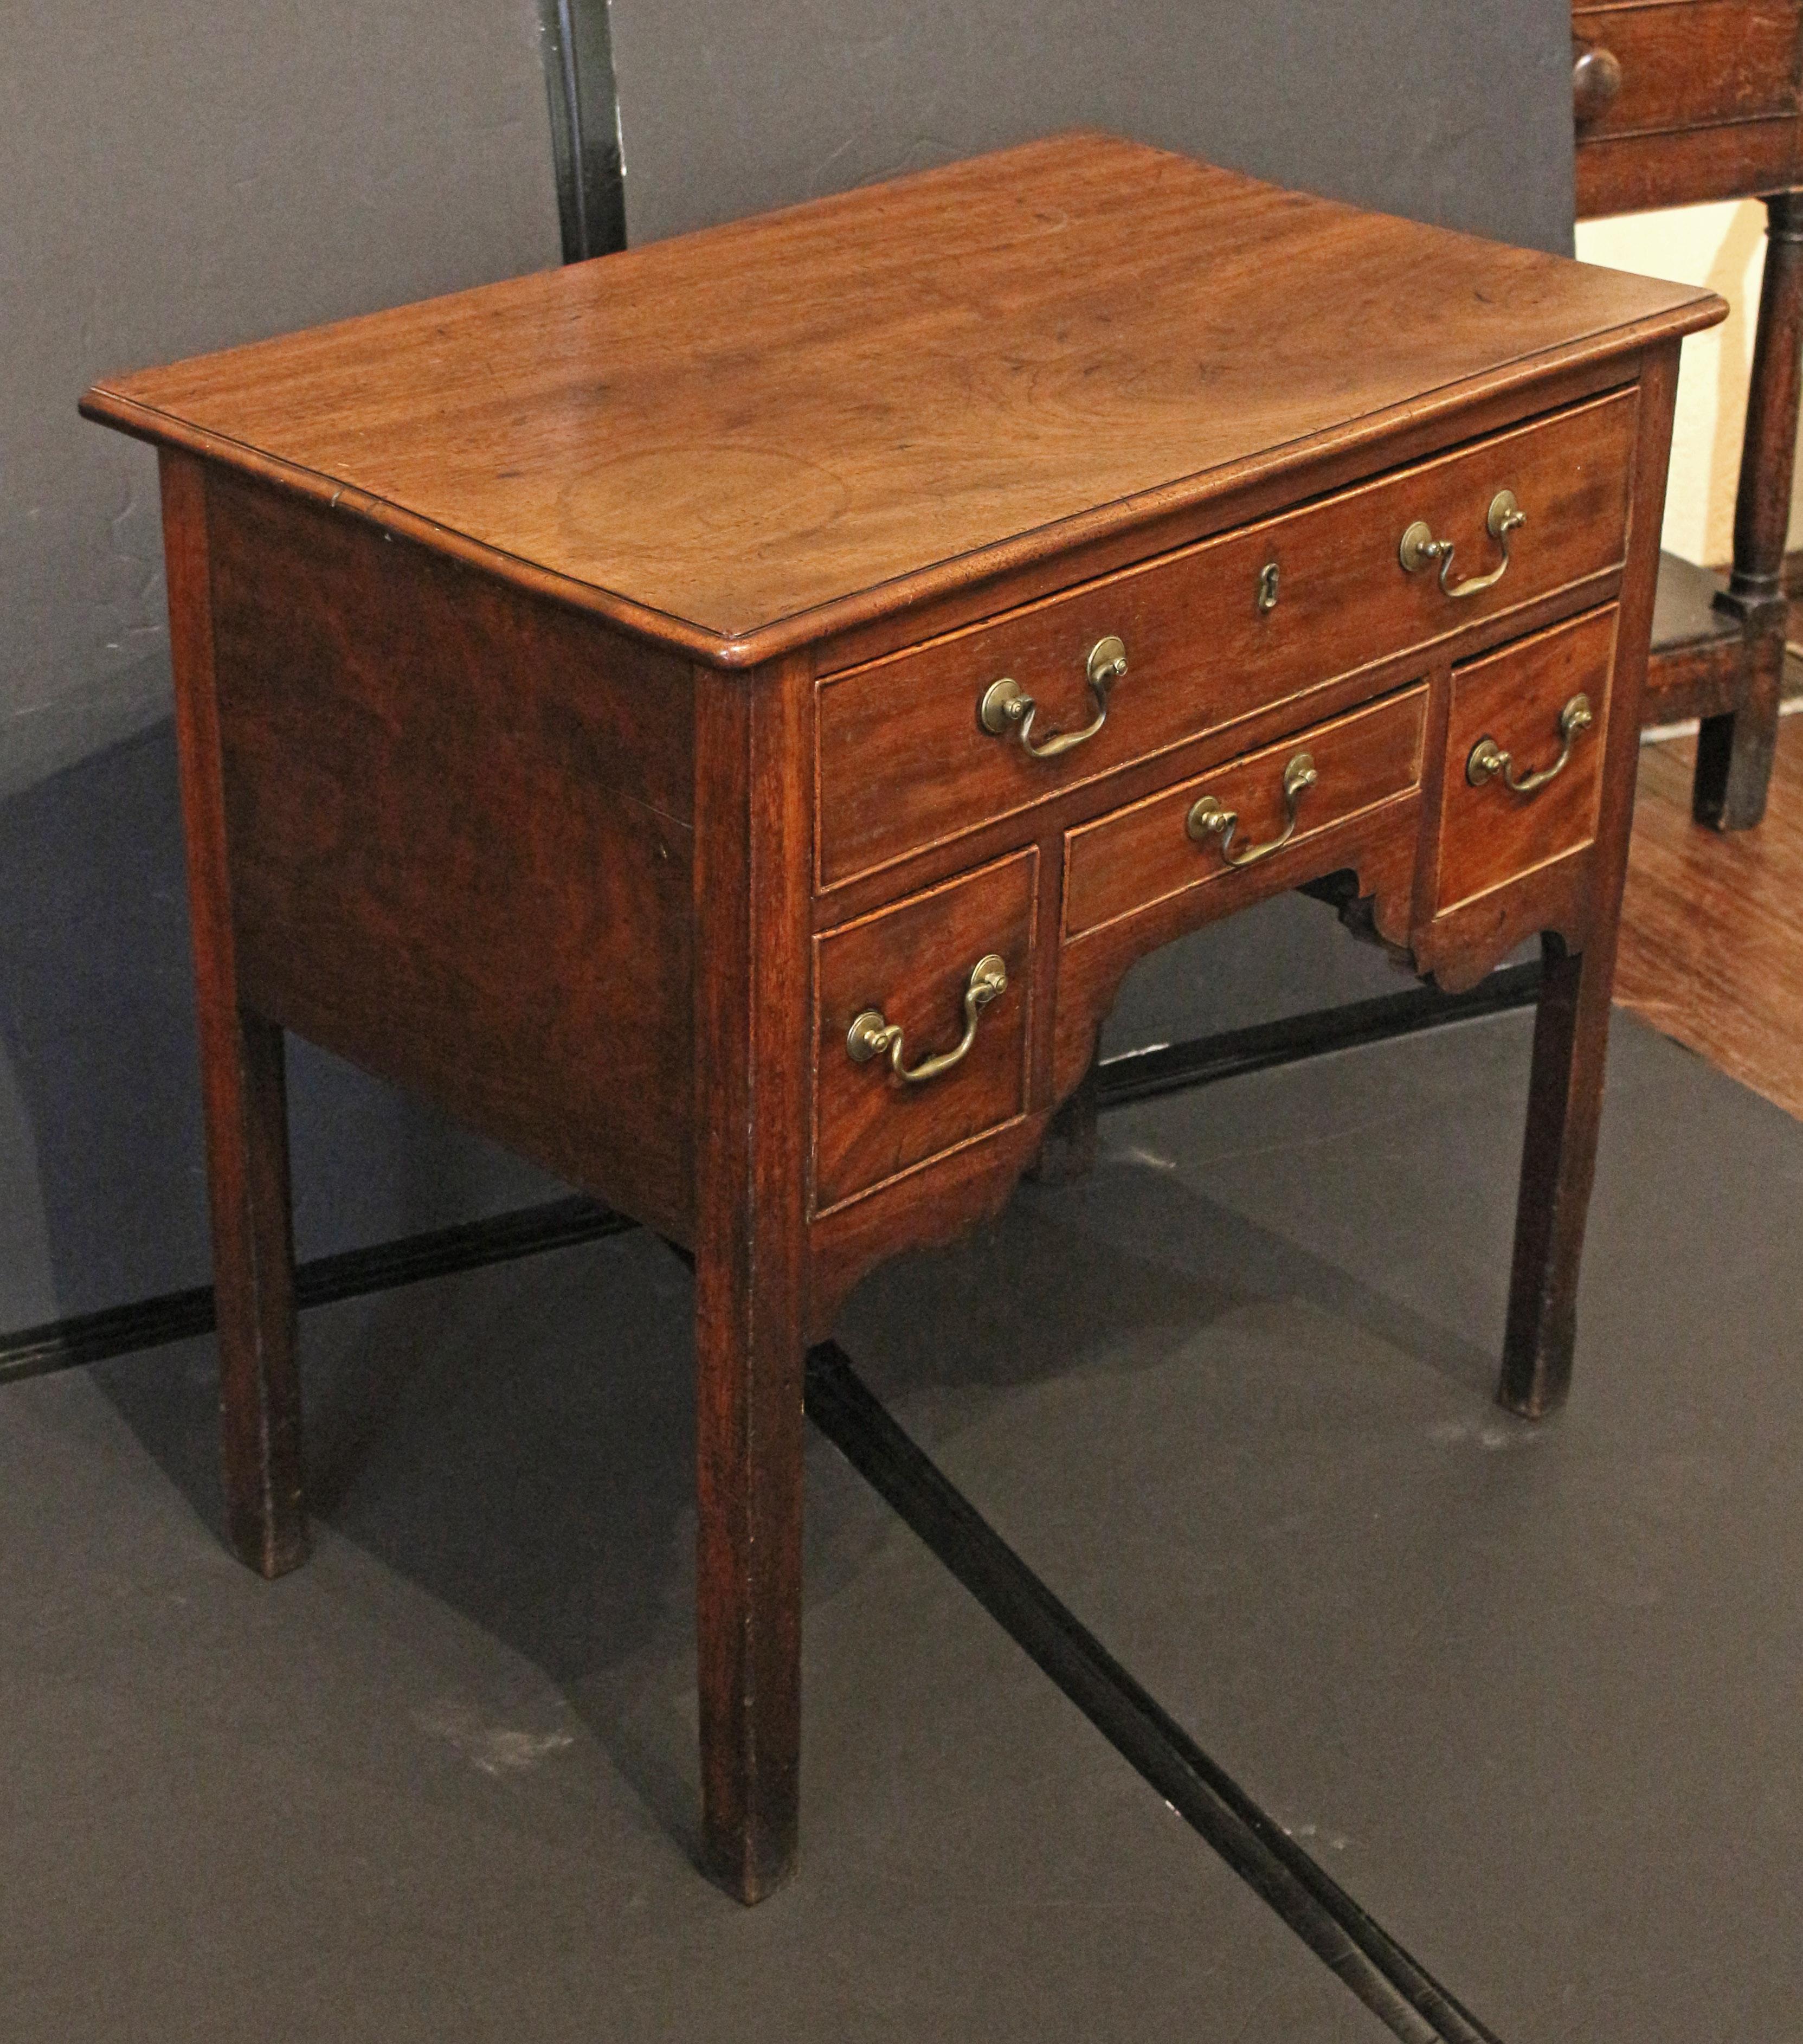 CIRCA 1760-80 Englischer Lowboy-Tisch aus der Zeit von George III. Gut gemasertes Mahagoni. Eine lange Schublade über einer zentralen, zierlichen, rechteckigen Schublade, flankiert von quadratischen Schubladen, über sehr schön geformten Schürzen. Er